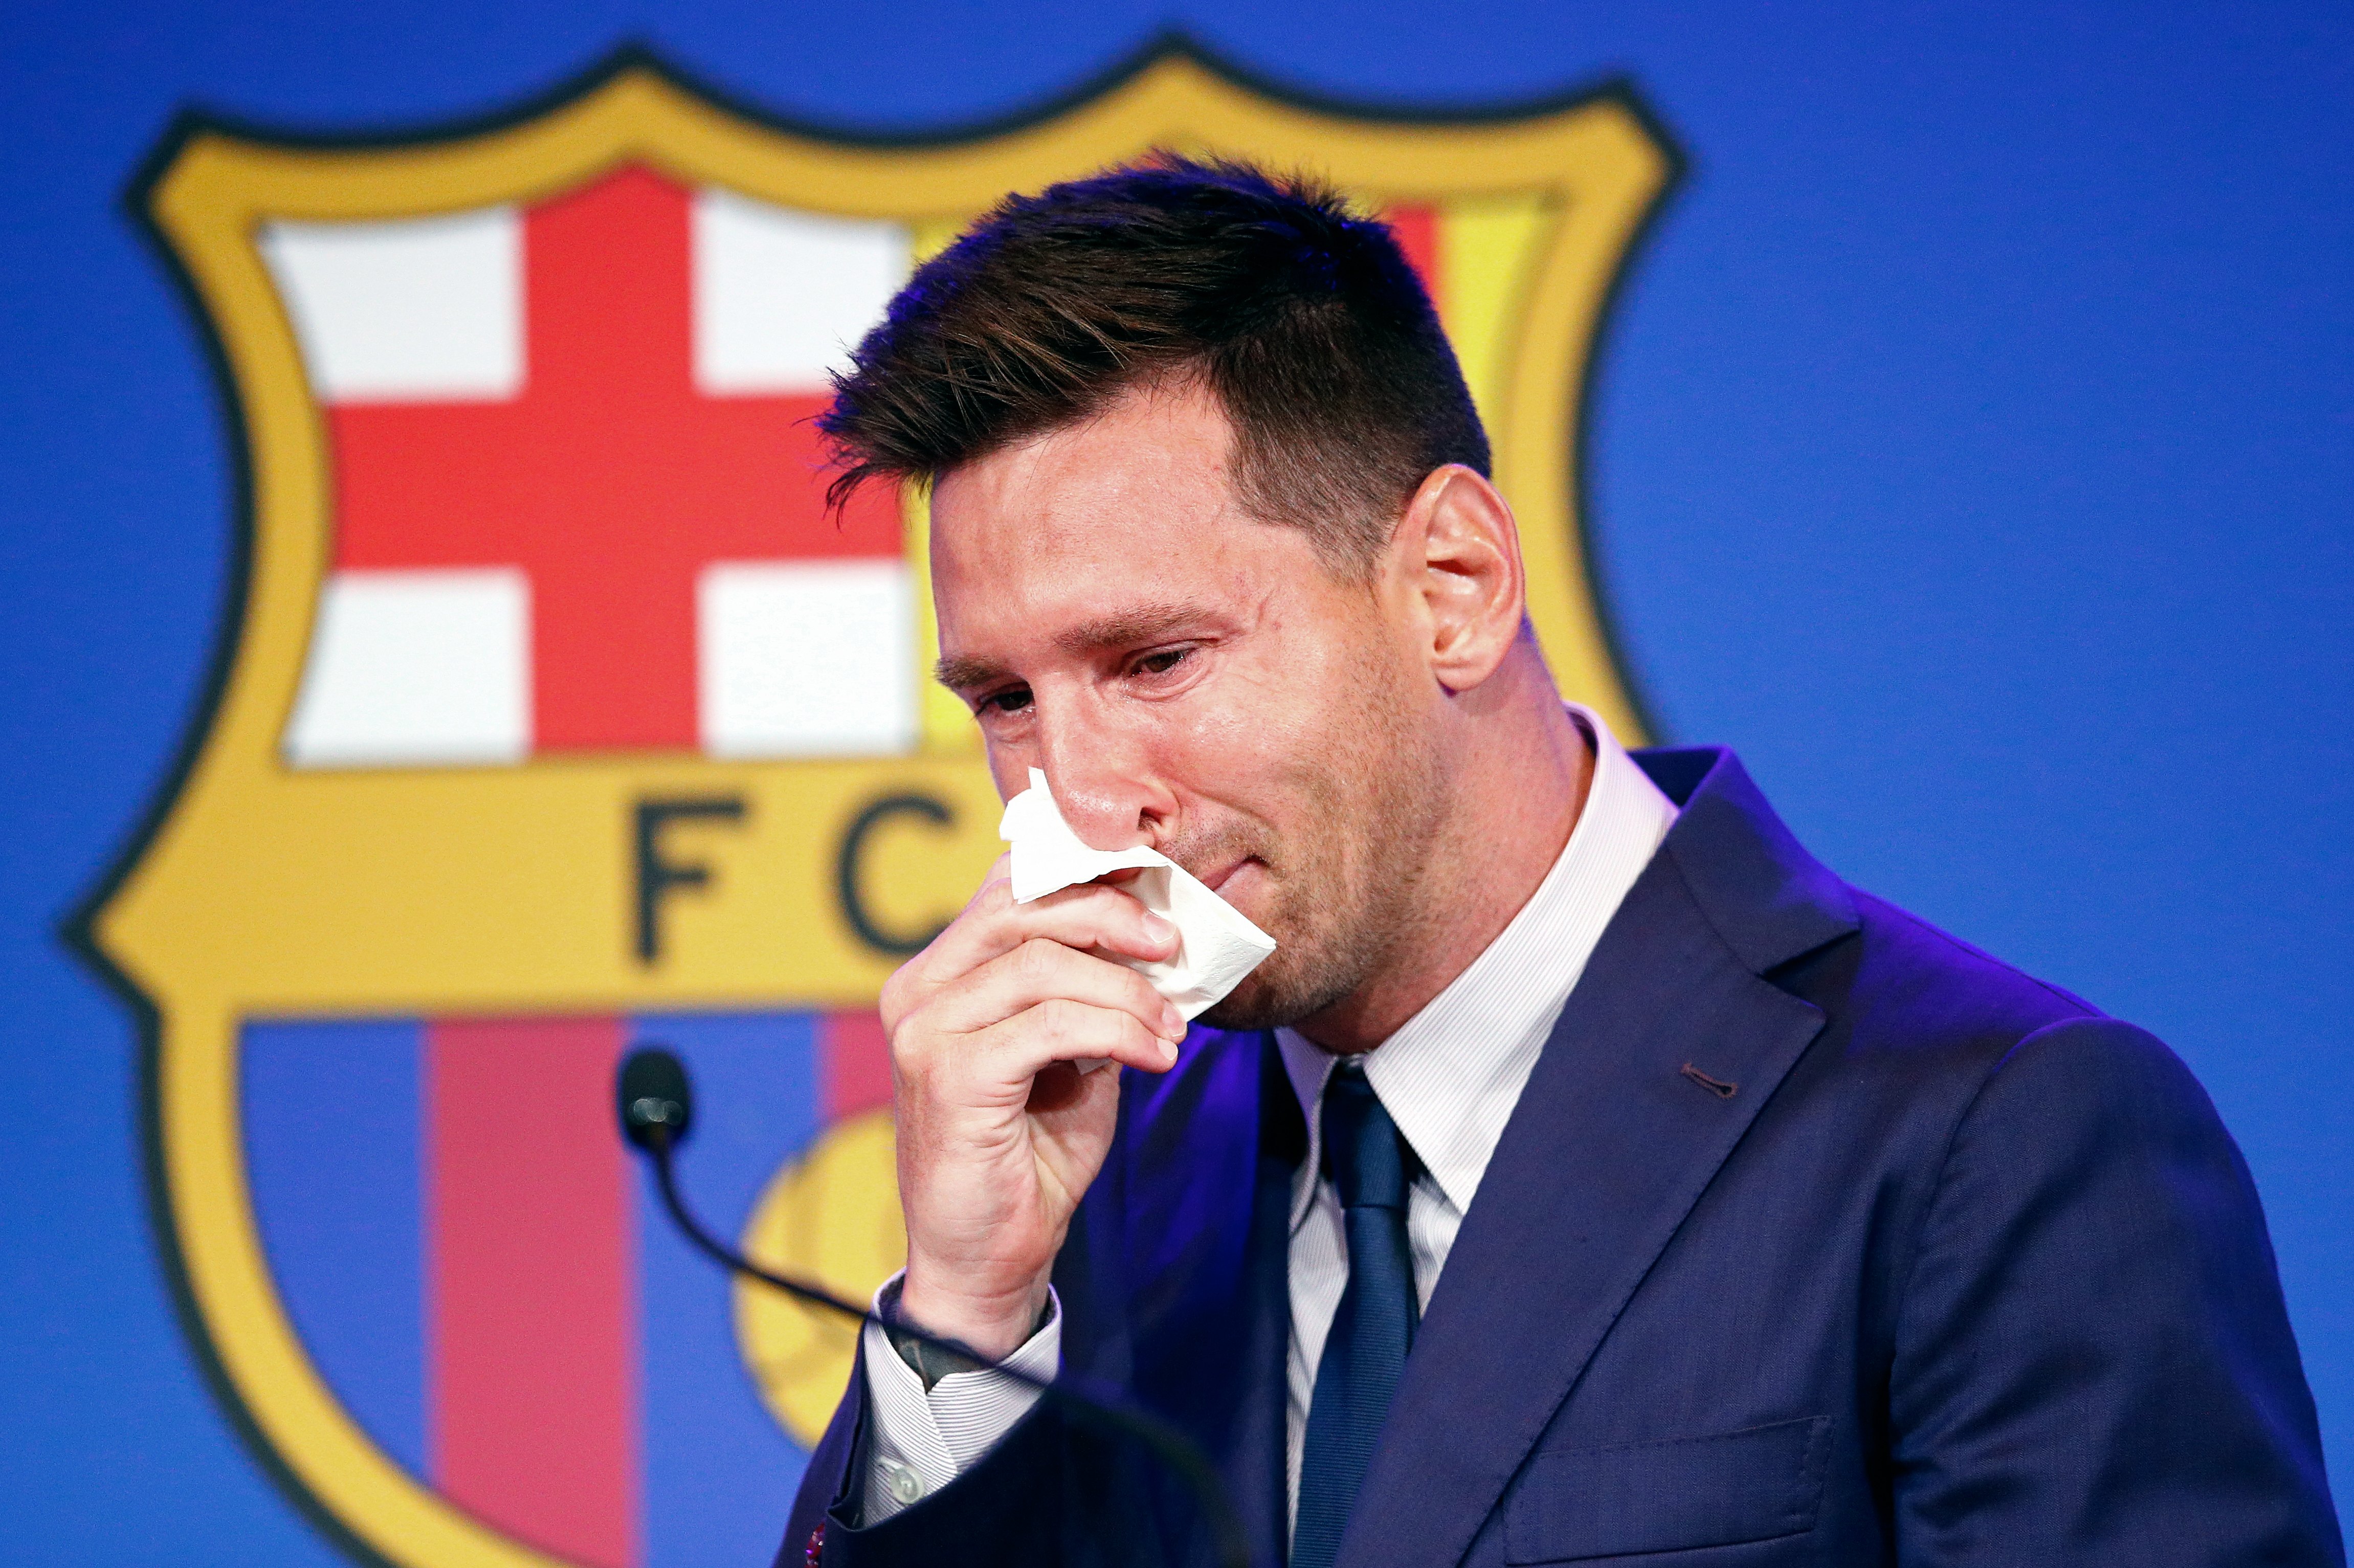 Messi verabschiedete sich emotional, nachdem er zugestimmt hatte, 2021 zu Paris Saint-Germain zu wechseln